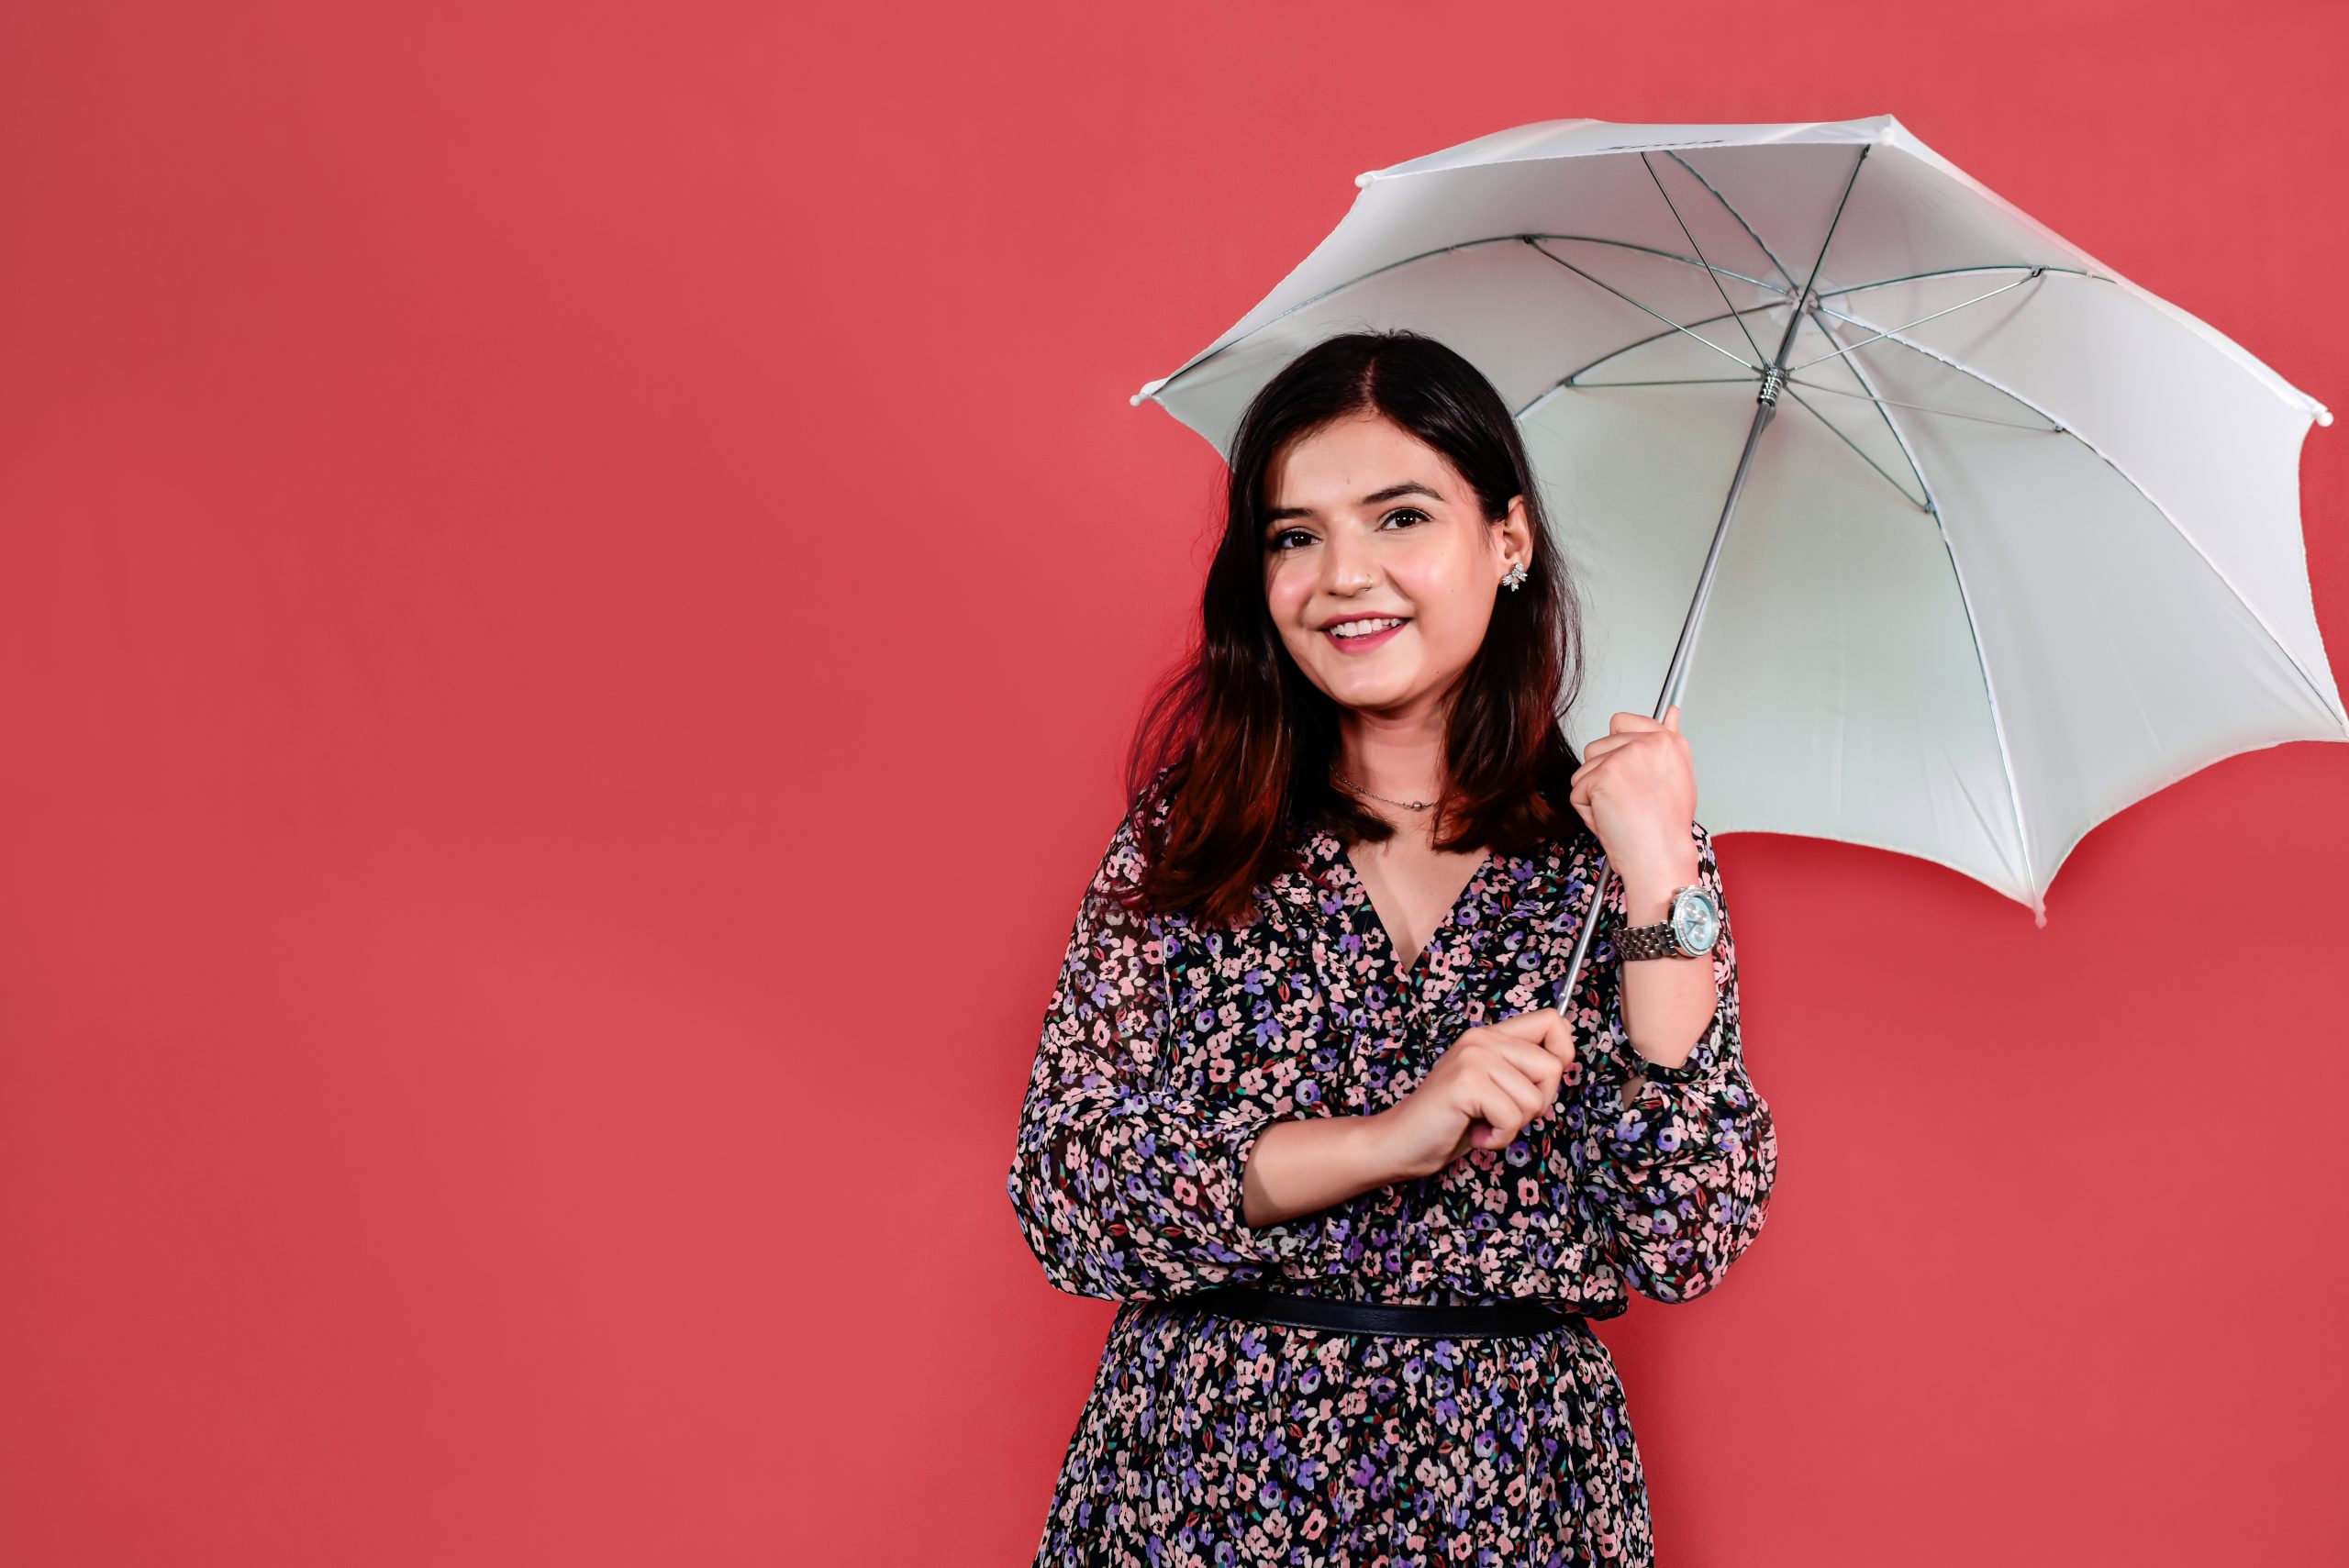 A girl with umbrella